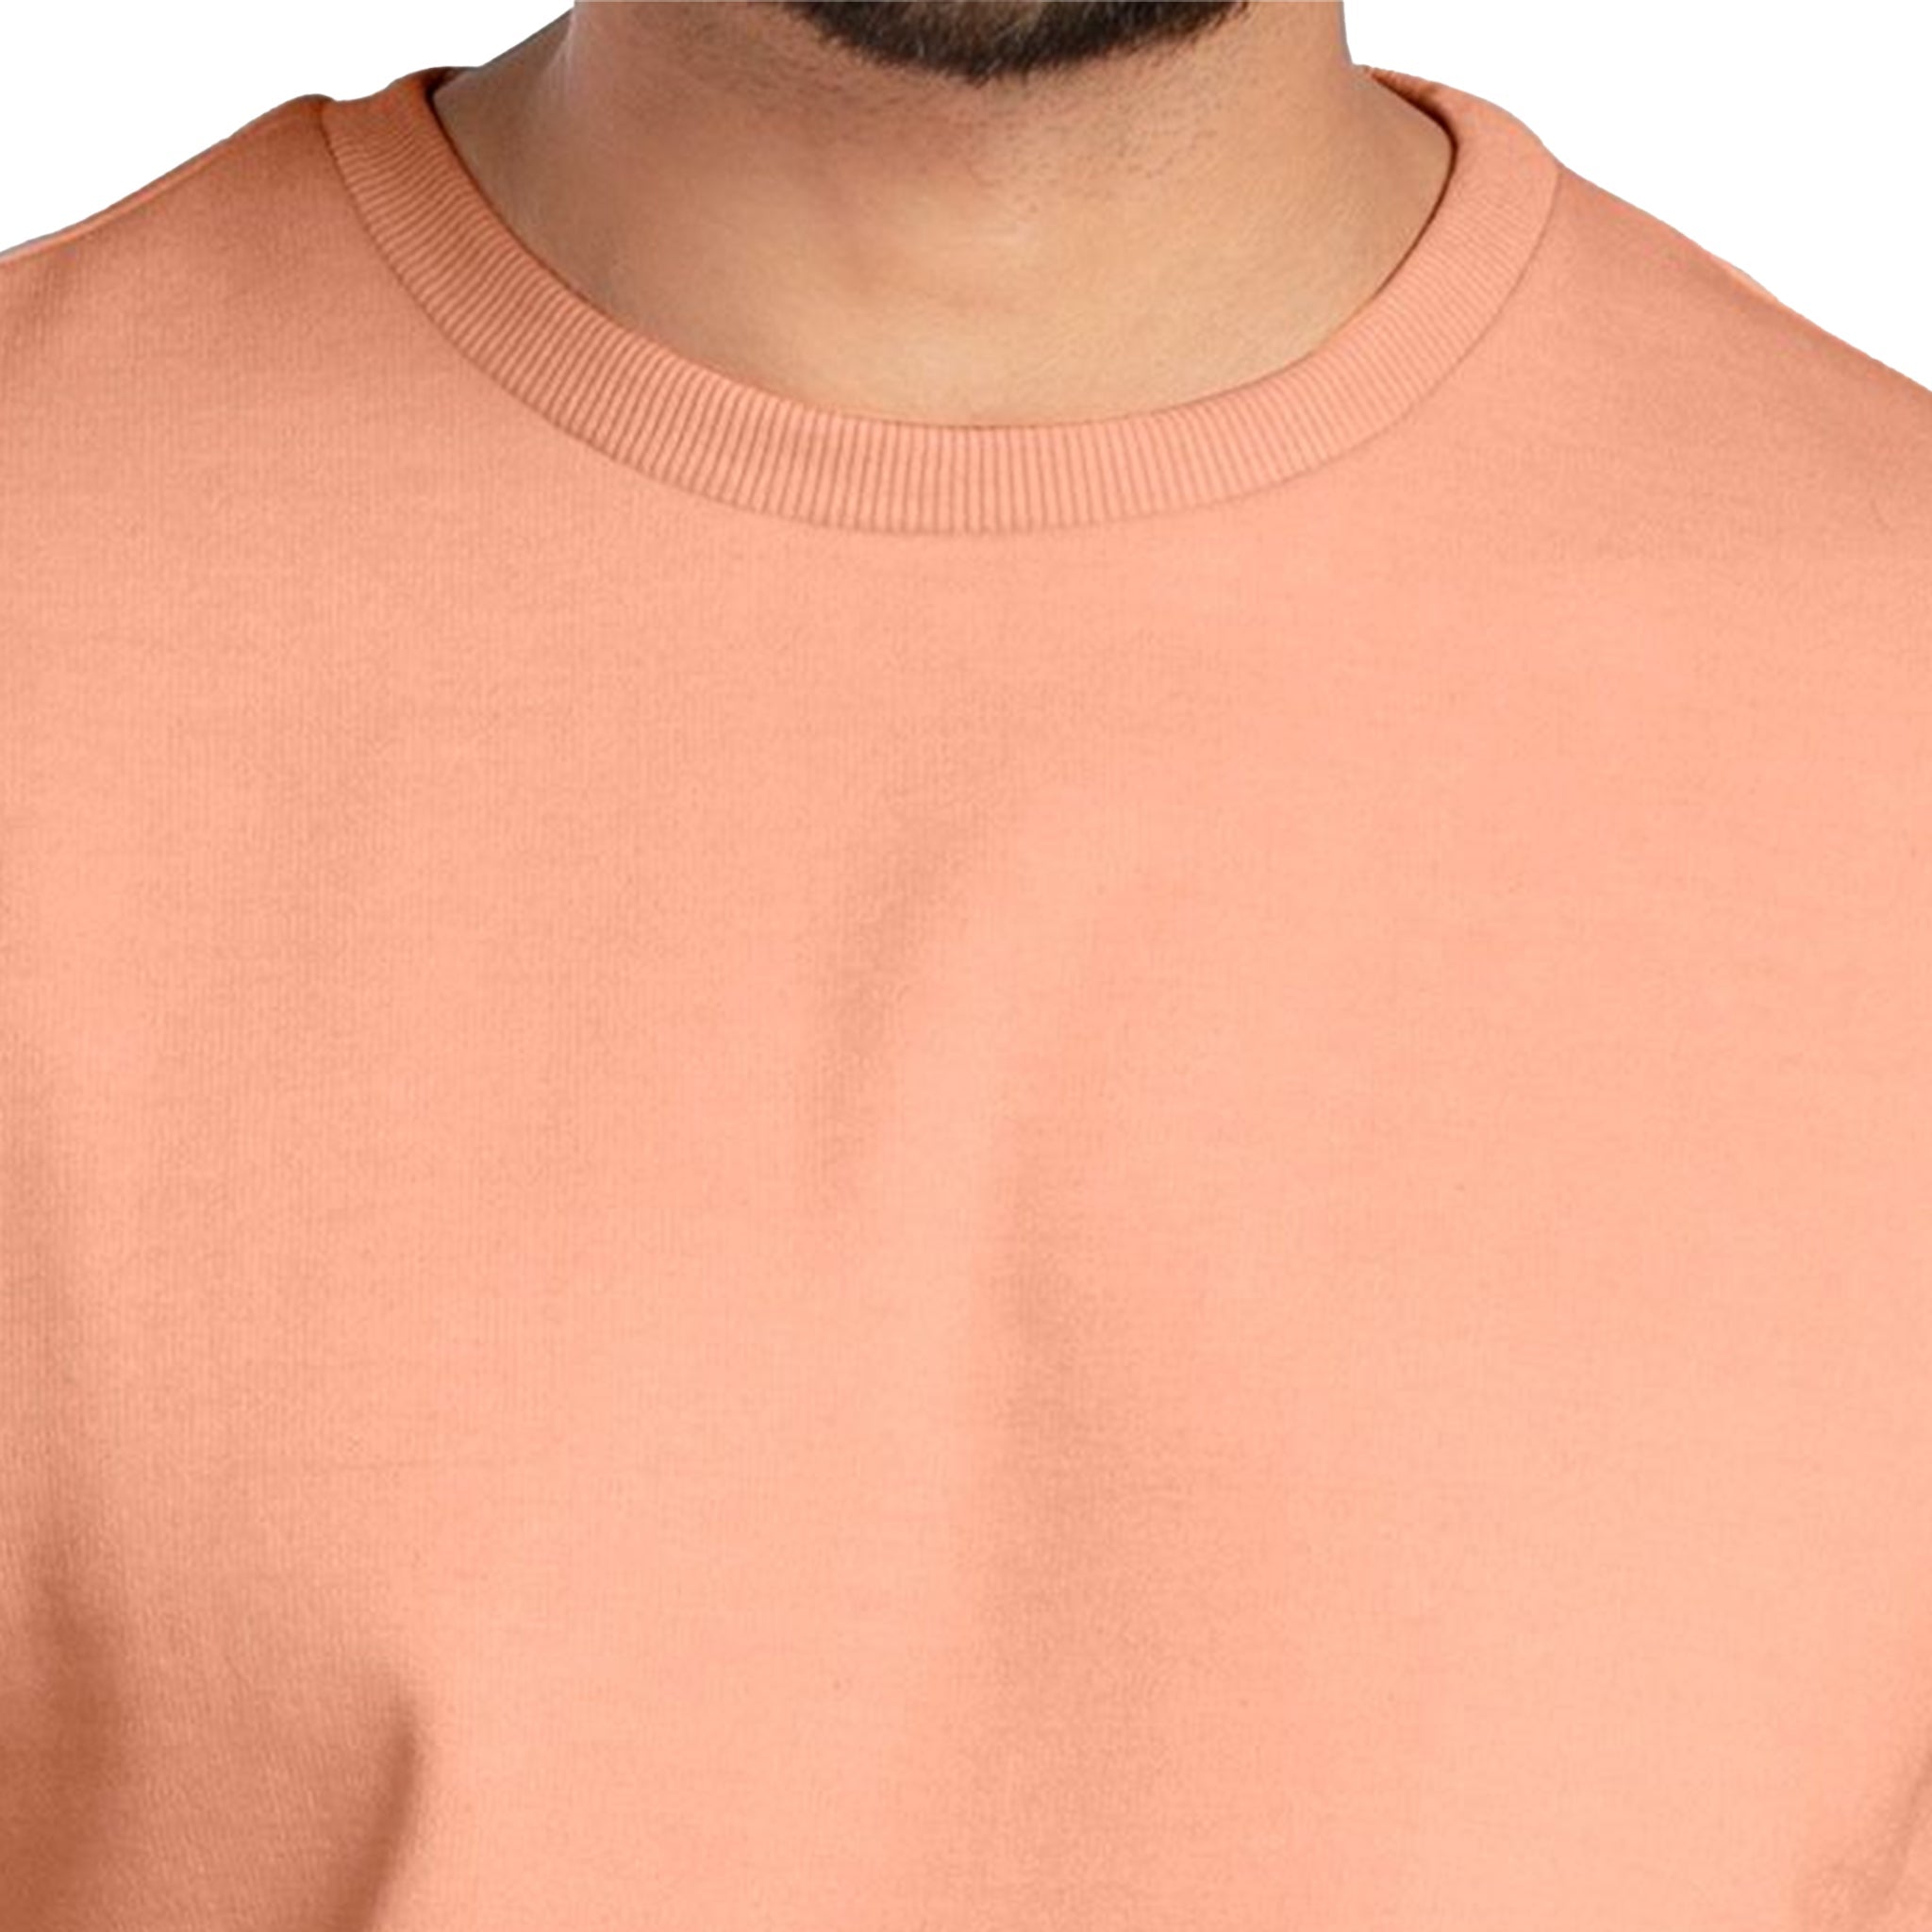 Bizzar's Coral Sweatshirt